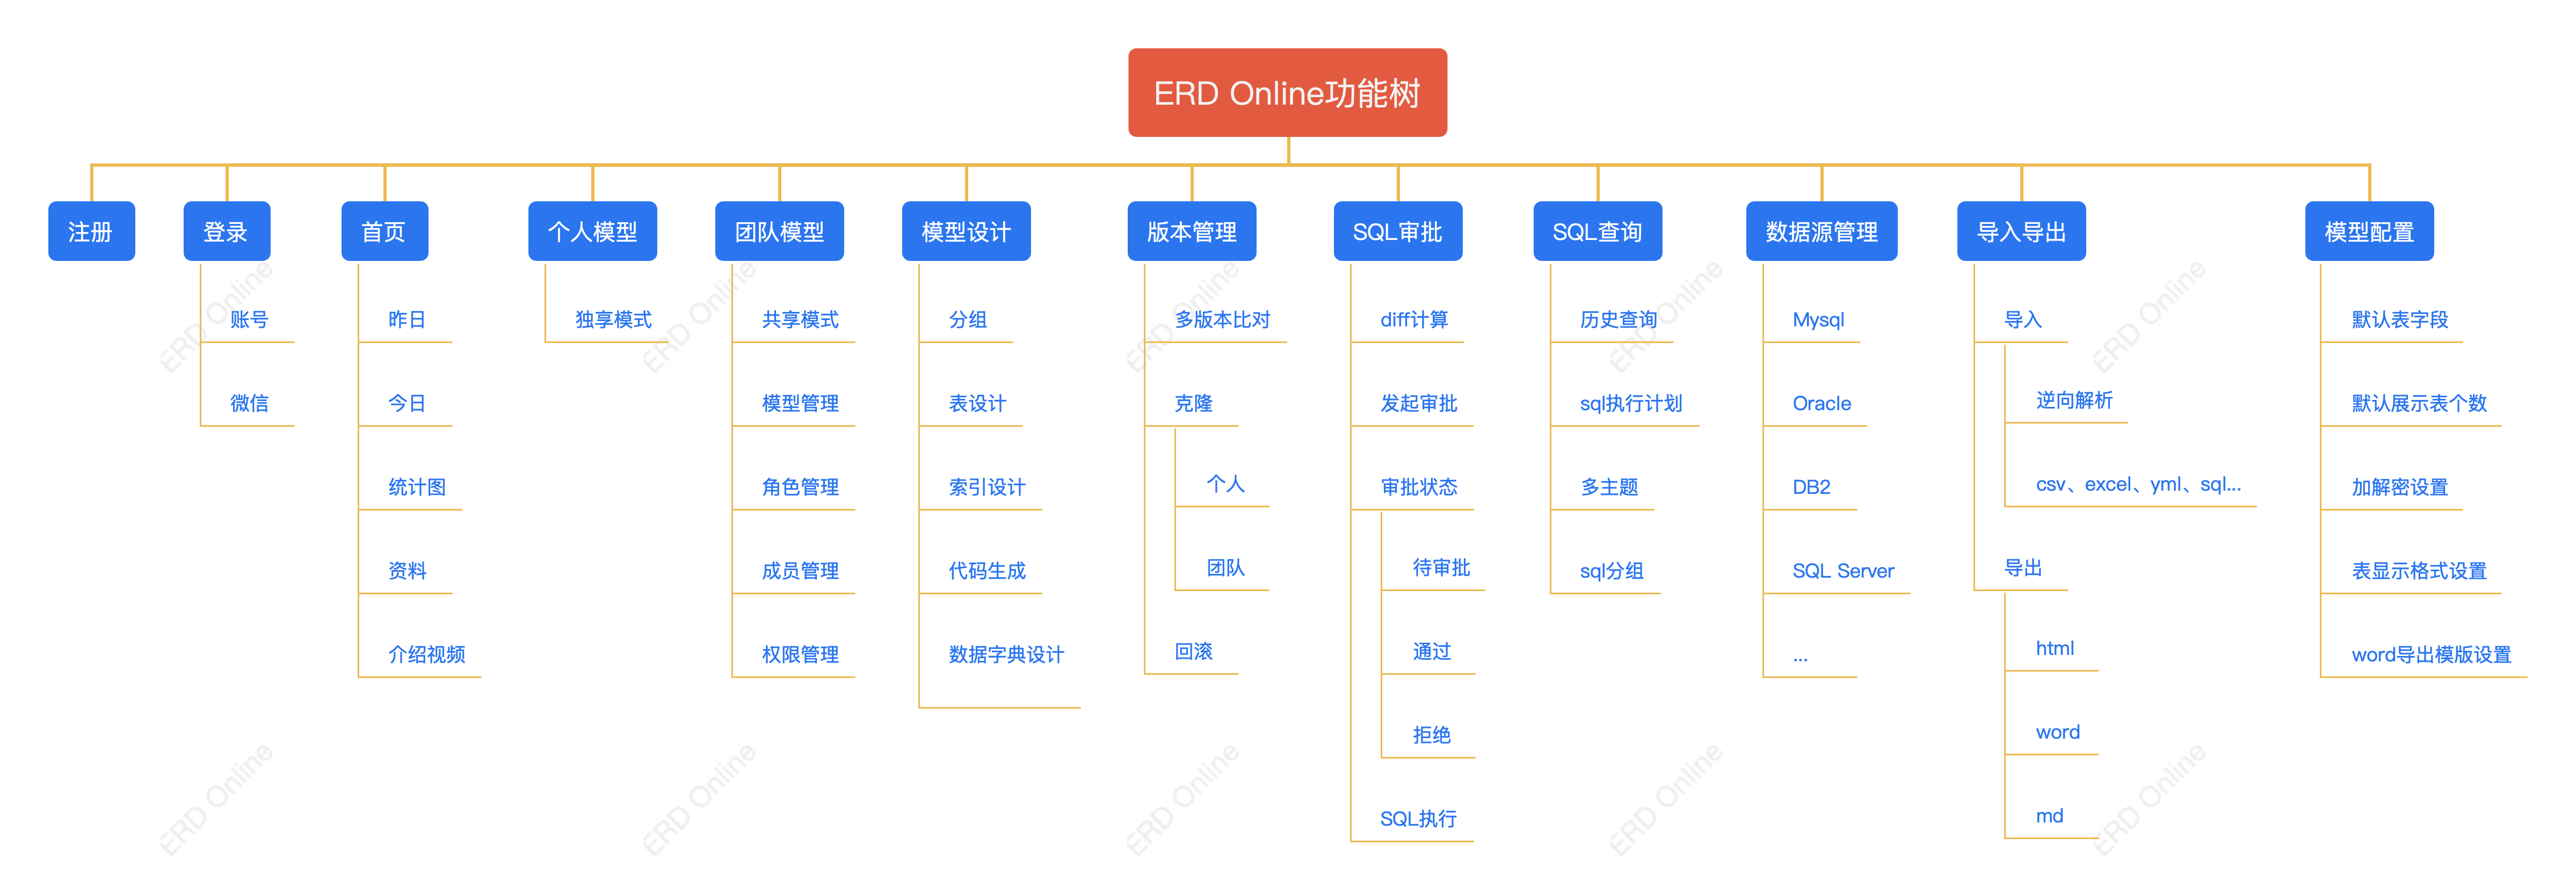 ERD Online 产品图鉴